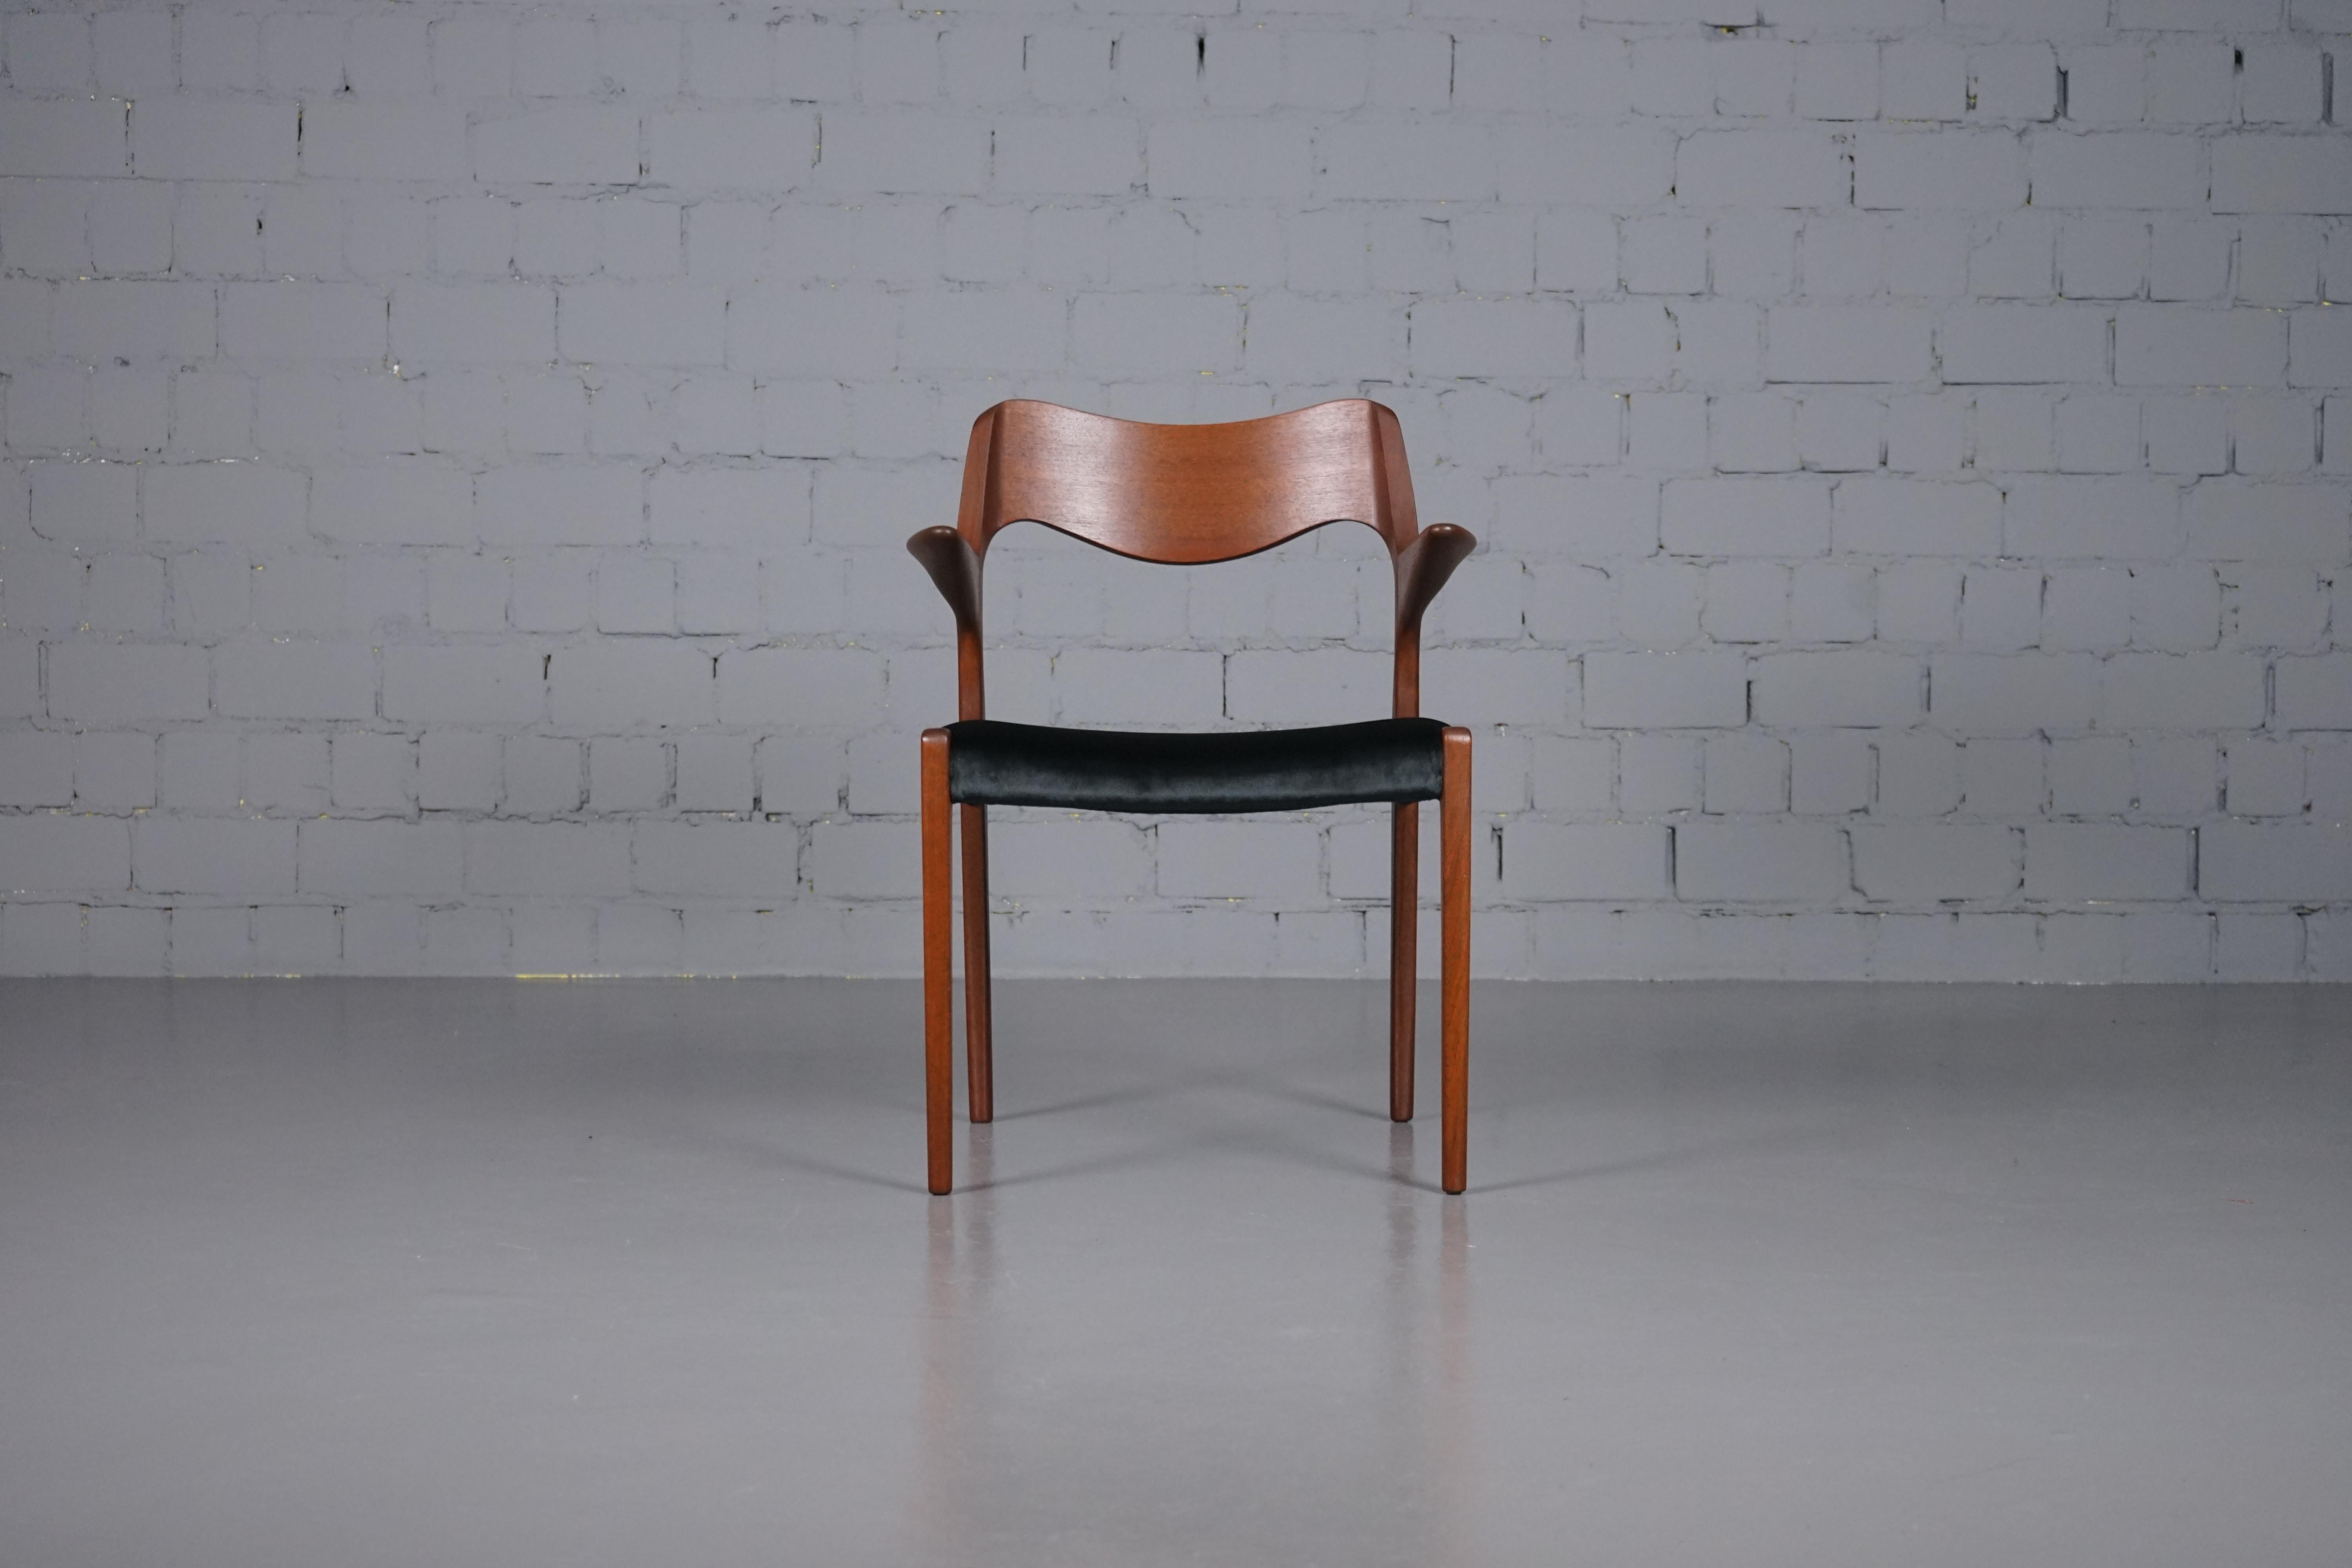 Teakholzstuhl Modell Nr. 55 Stuhl von Niels O. Moller für J.L Møller
Der Stuhl wurde komplett restauriert, Gurte, Polsterung und Stoff sind neu. Der Stoff ist tiefschwarz und es wurde ein hochwertiger Samtstoff von Dedar, Milano gewählt. Das Gewebe